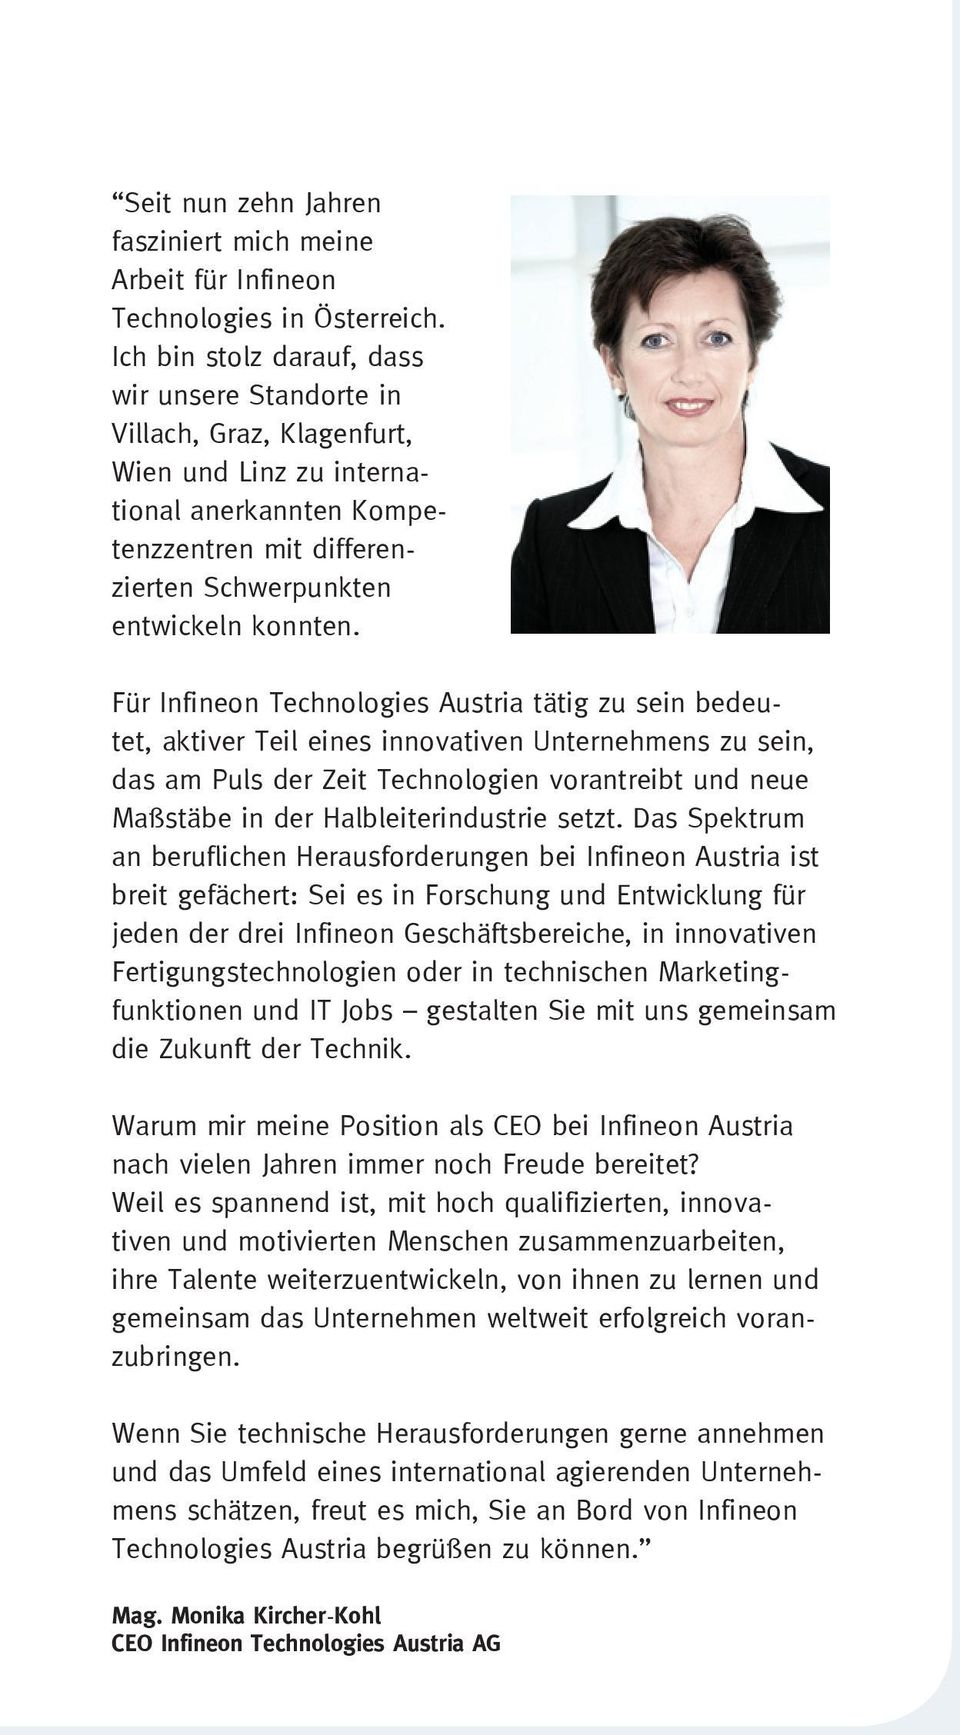 Für Infineon Technologies Austria tätig zu sein bedeutet, aktiver Teil eines innovativen Unternehmens zu sein, das am Puls der Zeit Technologien vorantreibt und neue Maßstäbe in der